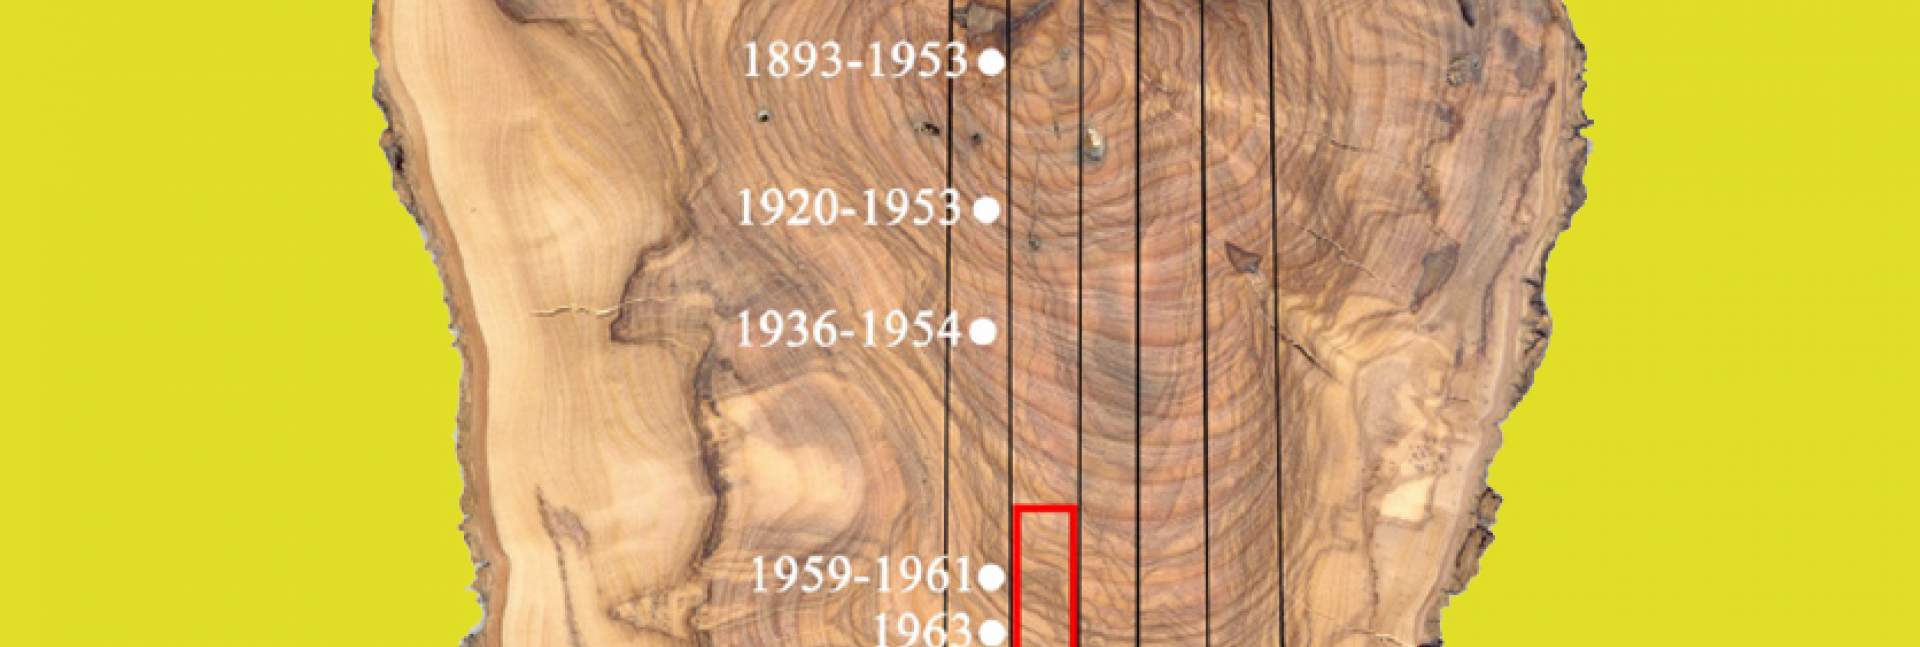 חתך רוחב של ענף עץ זית בן זמננו. הניסויים הגרעיניים בשנות ה-50 וה-60 הותירו את חותמם באזור המסומן באדום